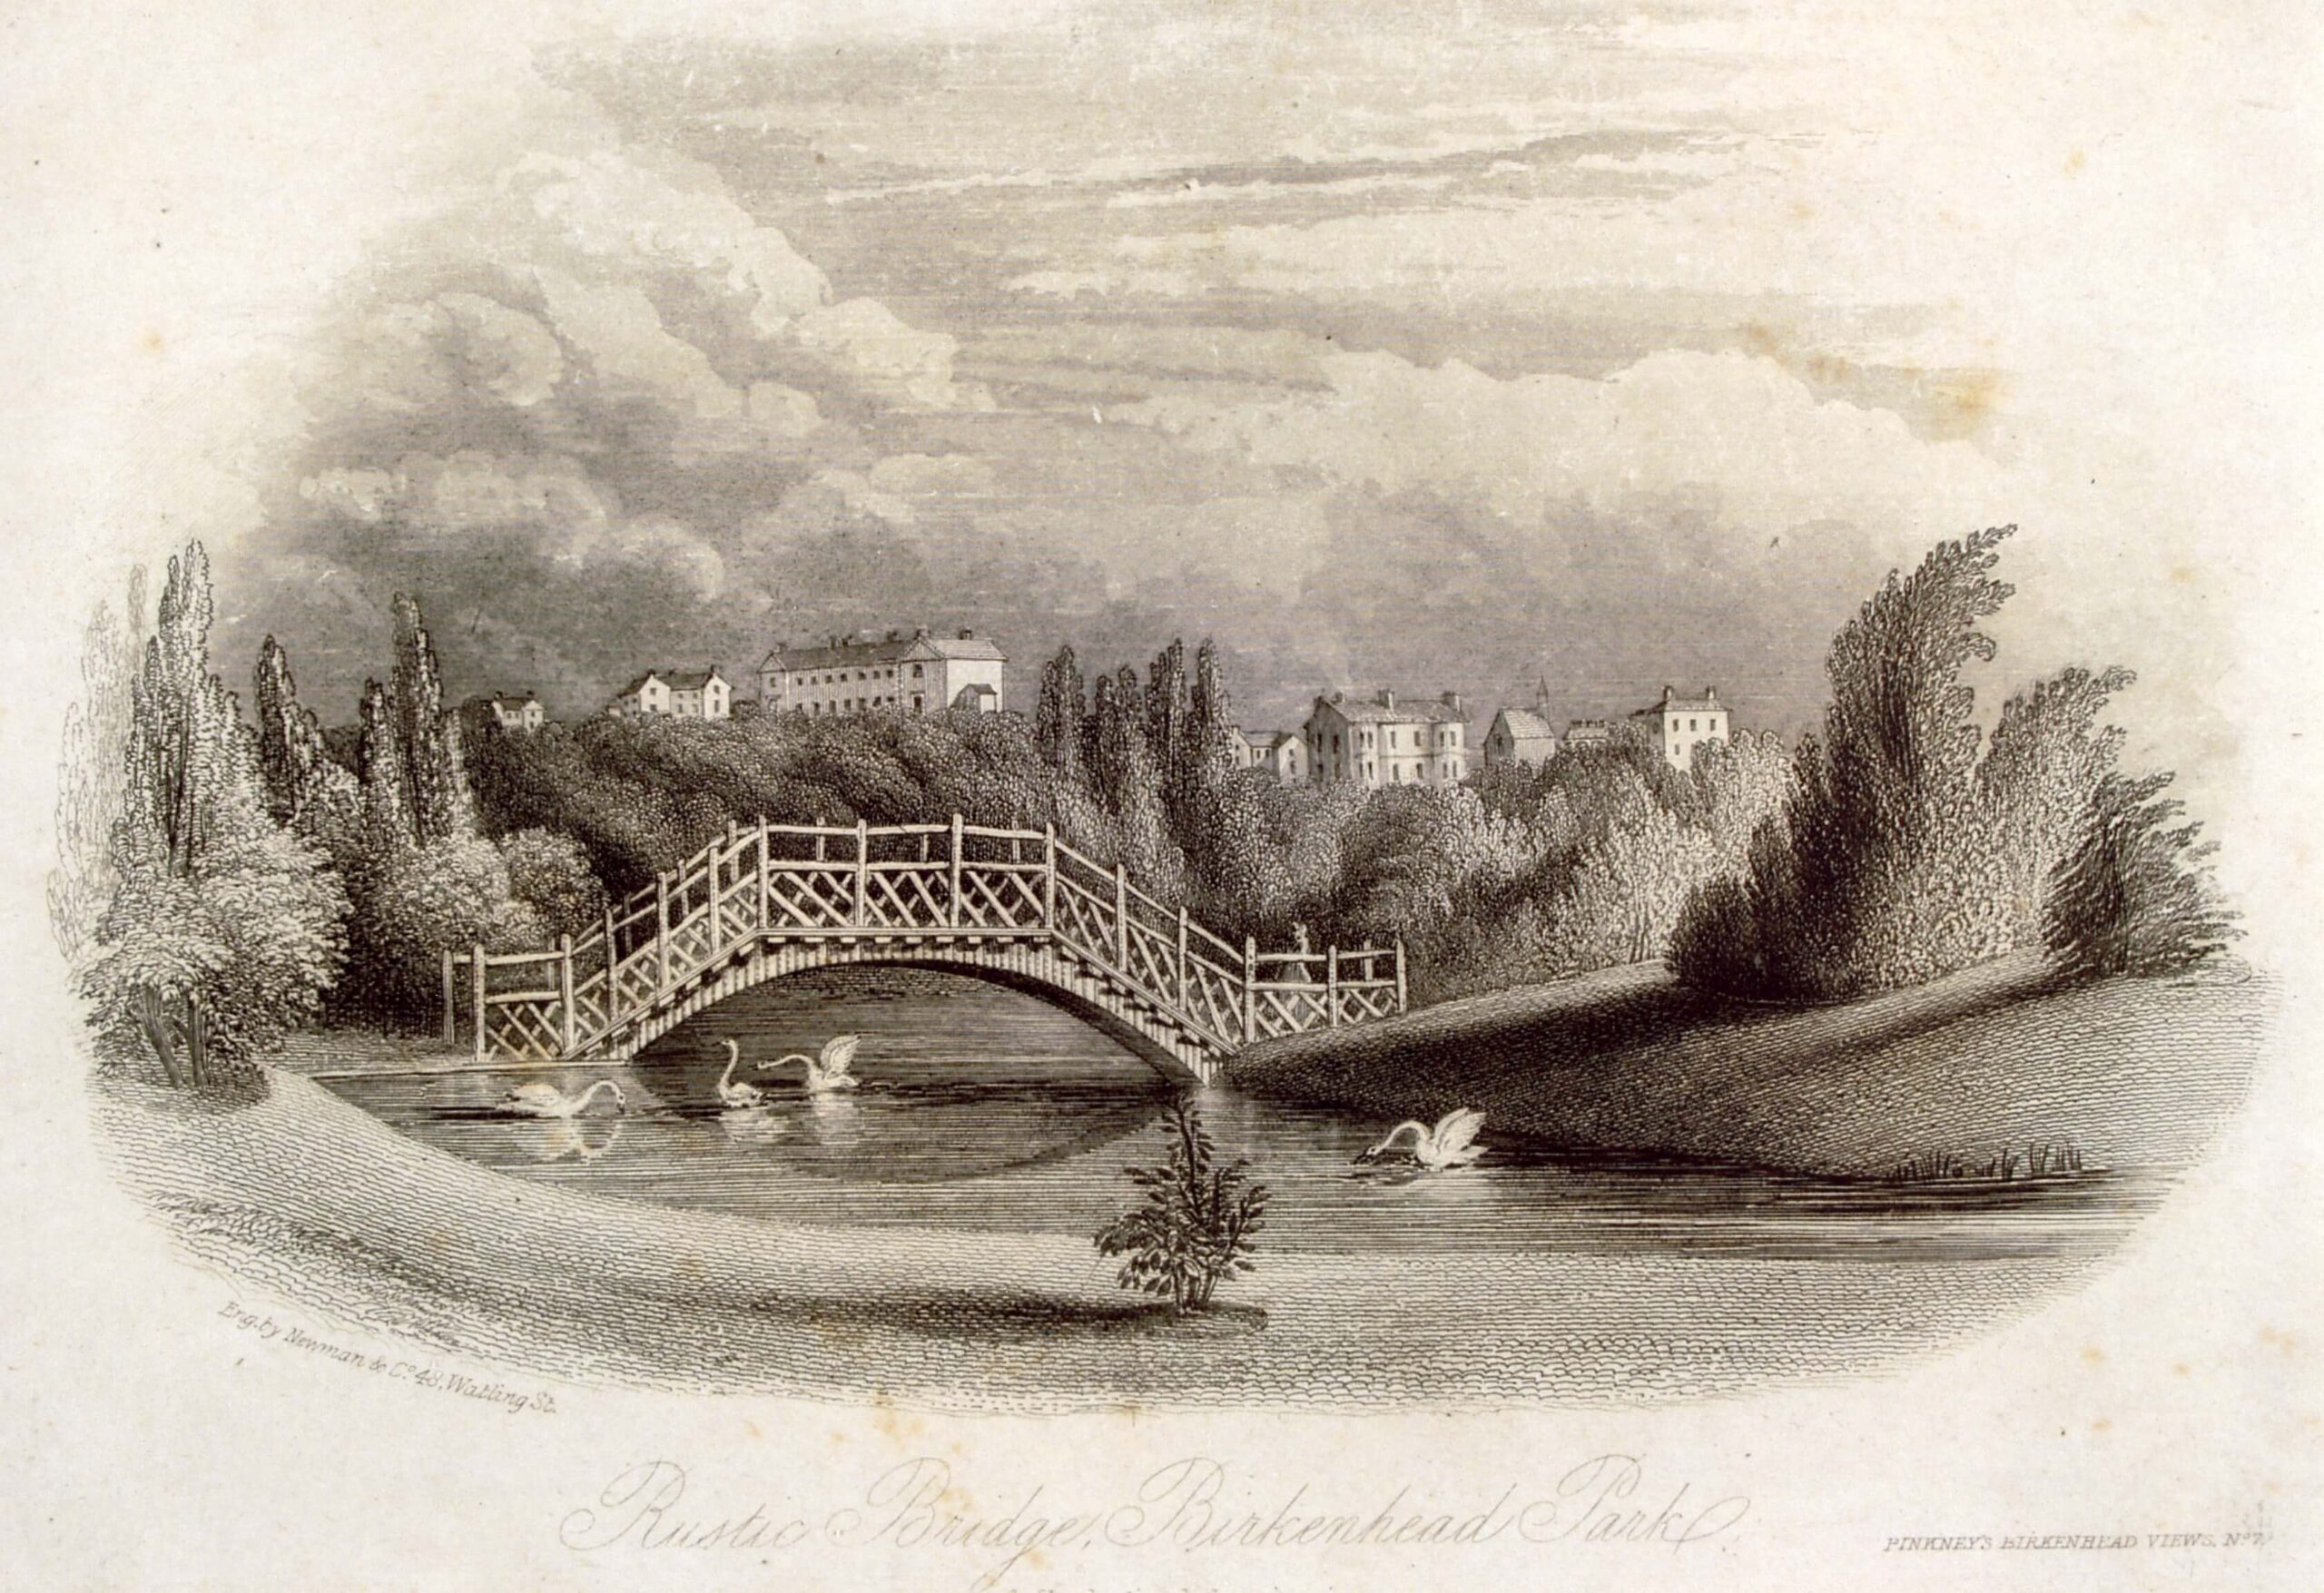 Print showing Birkenhead Park's wooden Rustic Bridge 1860